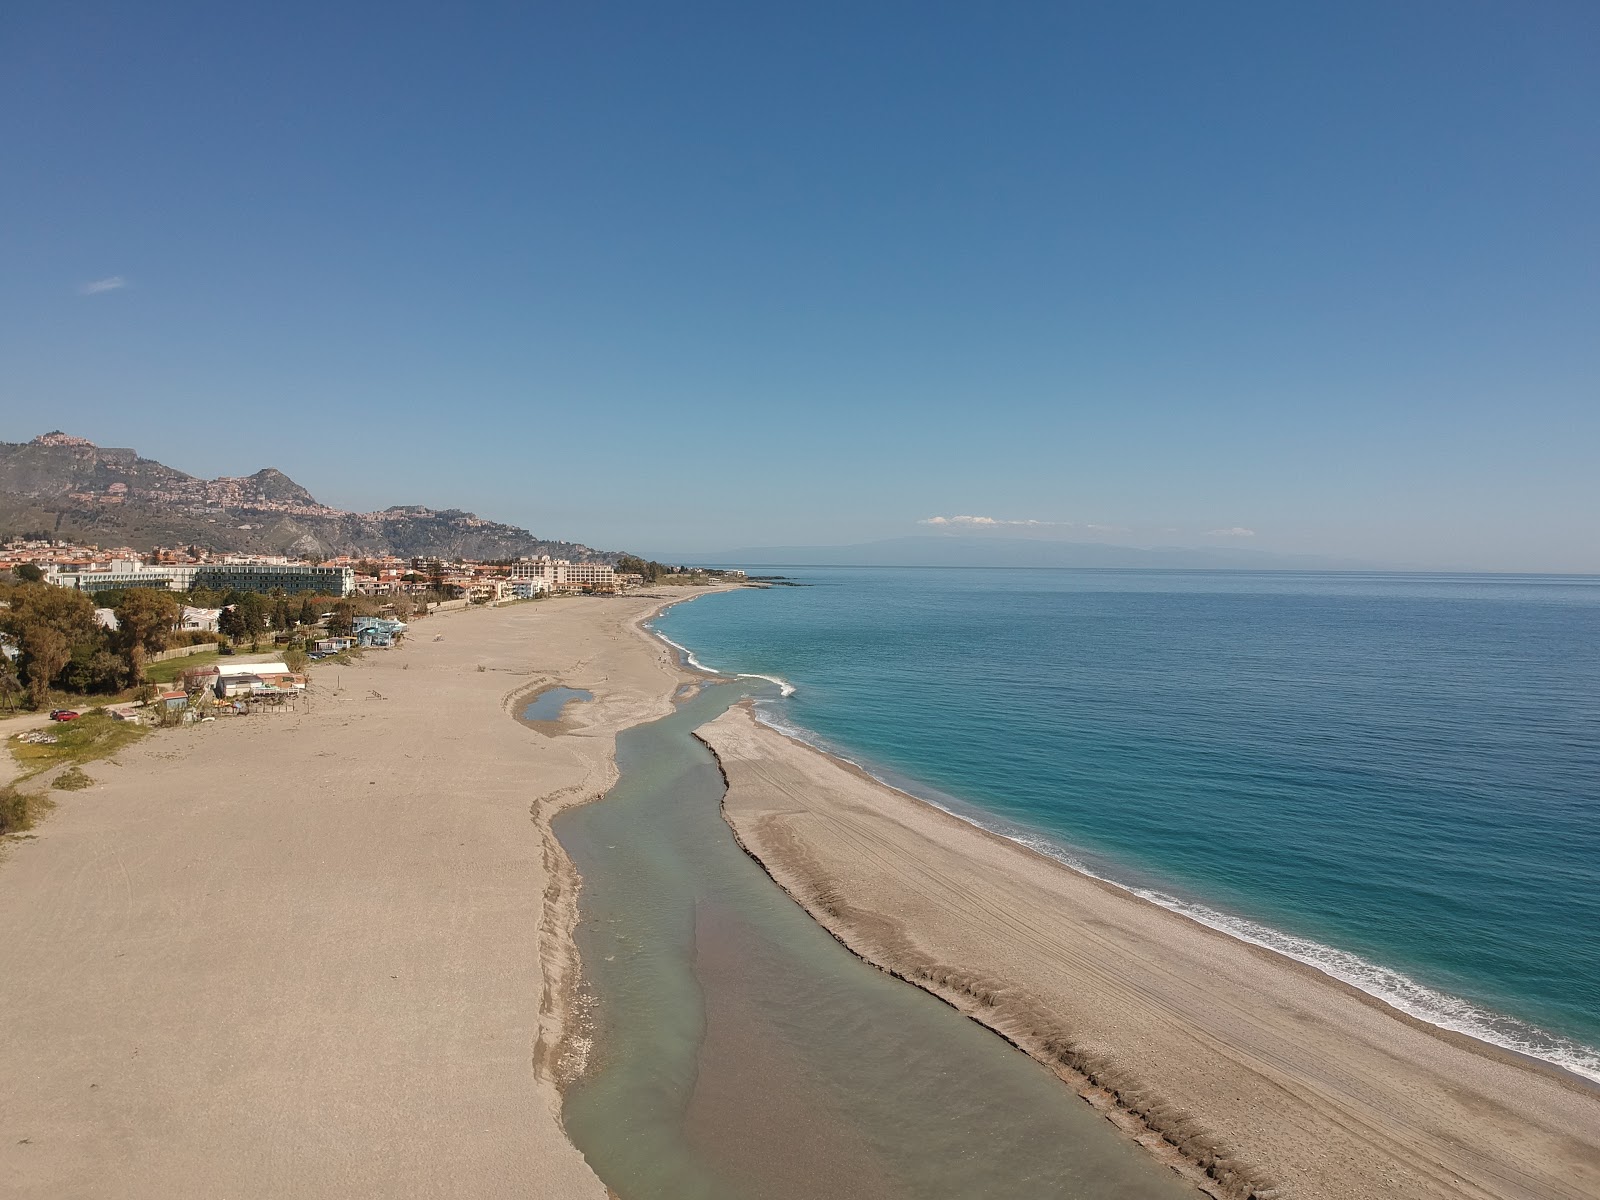 Recanati beach II'in fotoğrafı turkuaz saf su yüzey ile